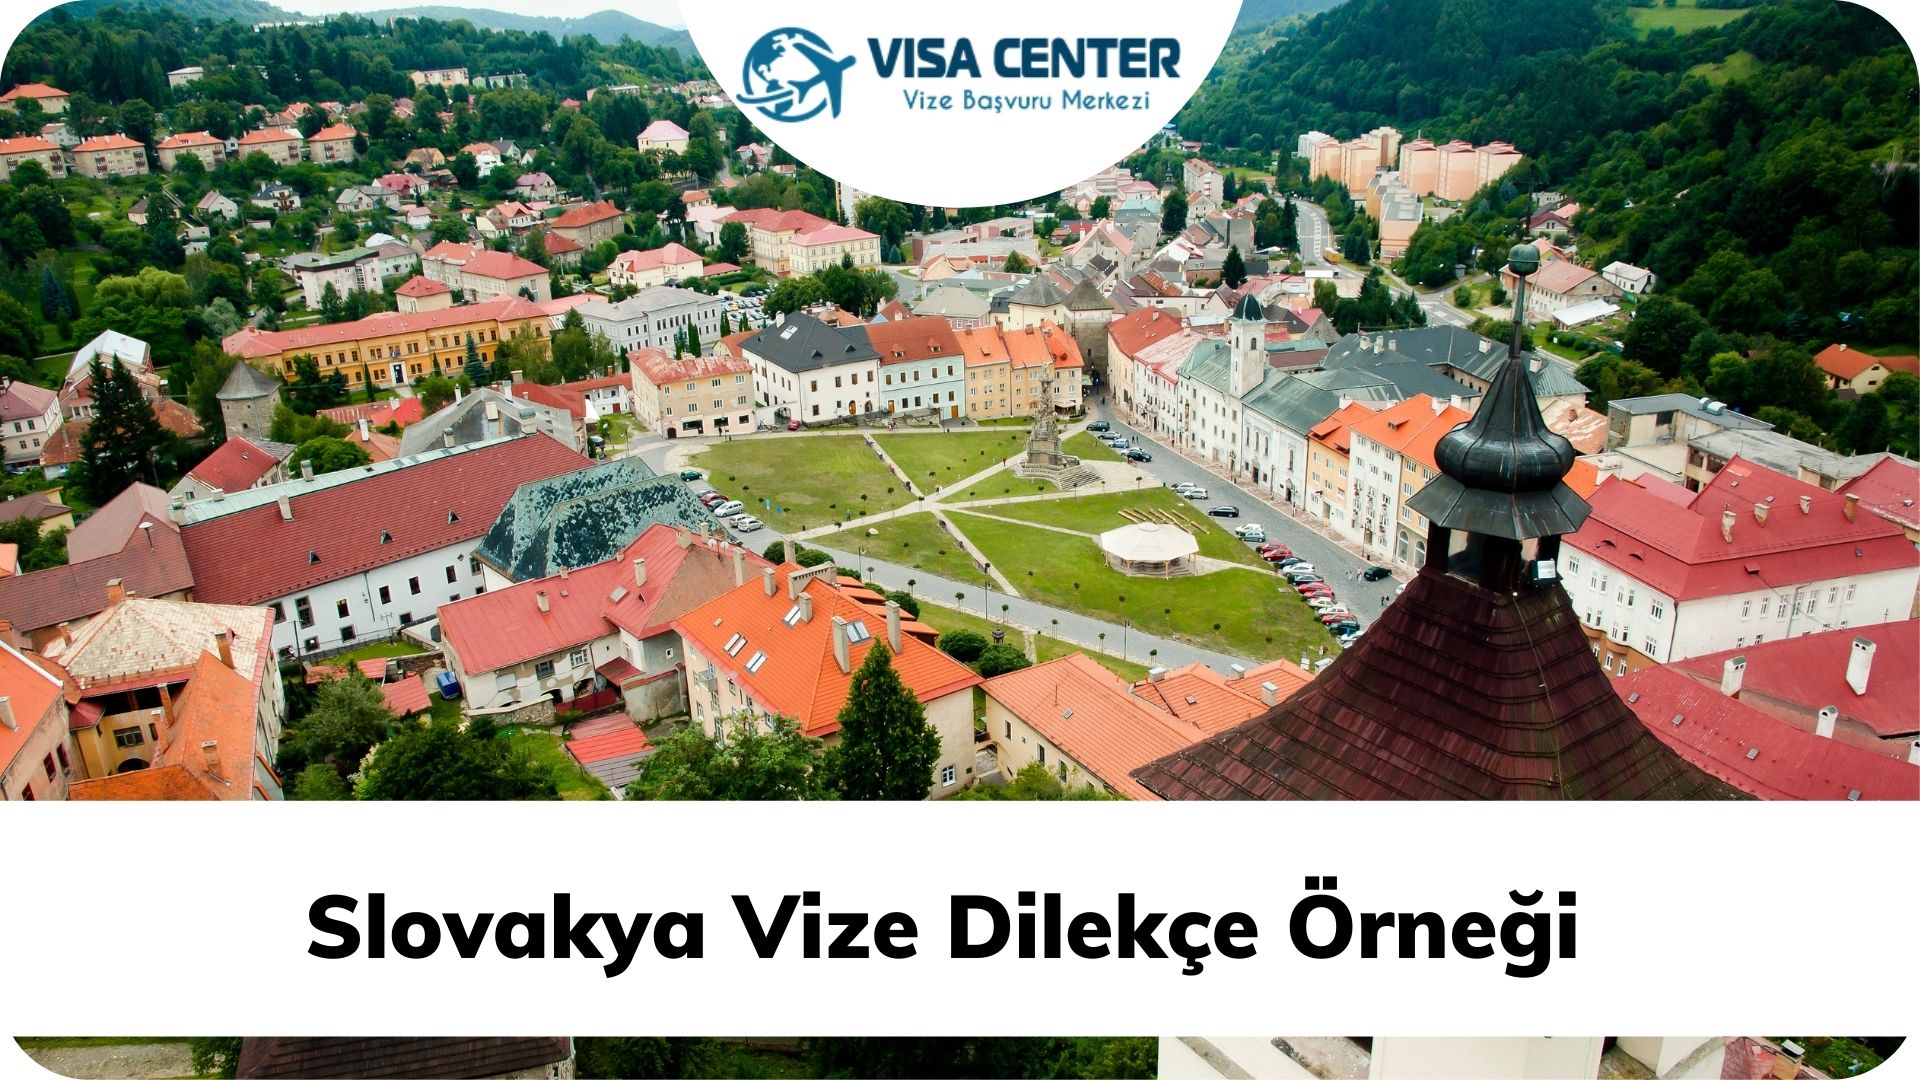 Slovakya Vize Dilekçe Örneği